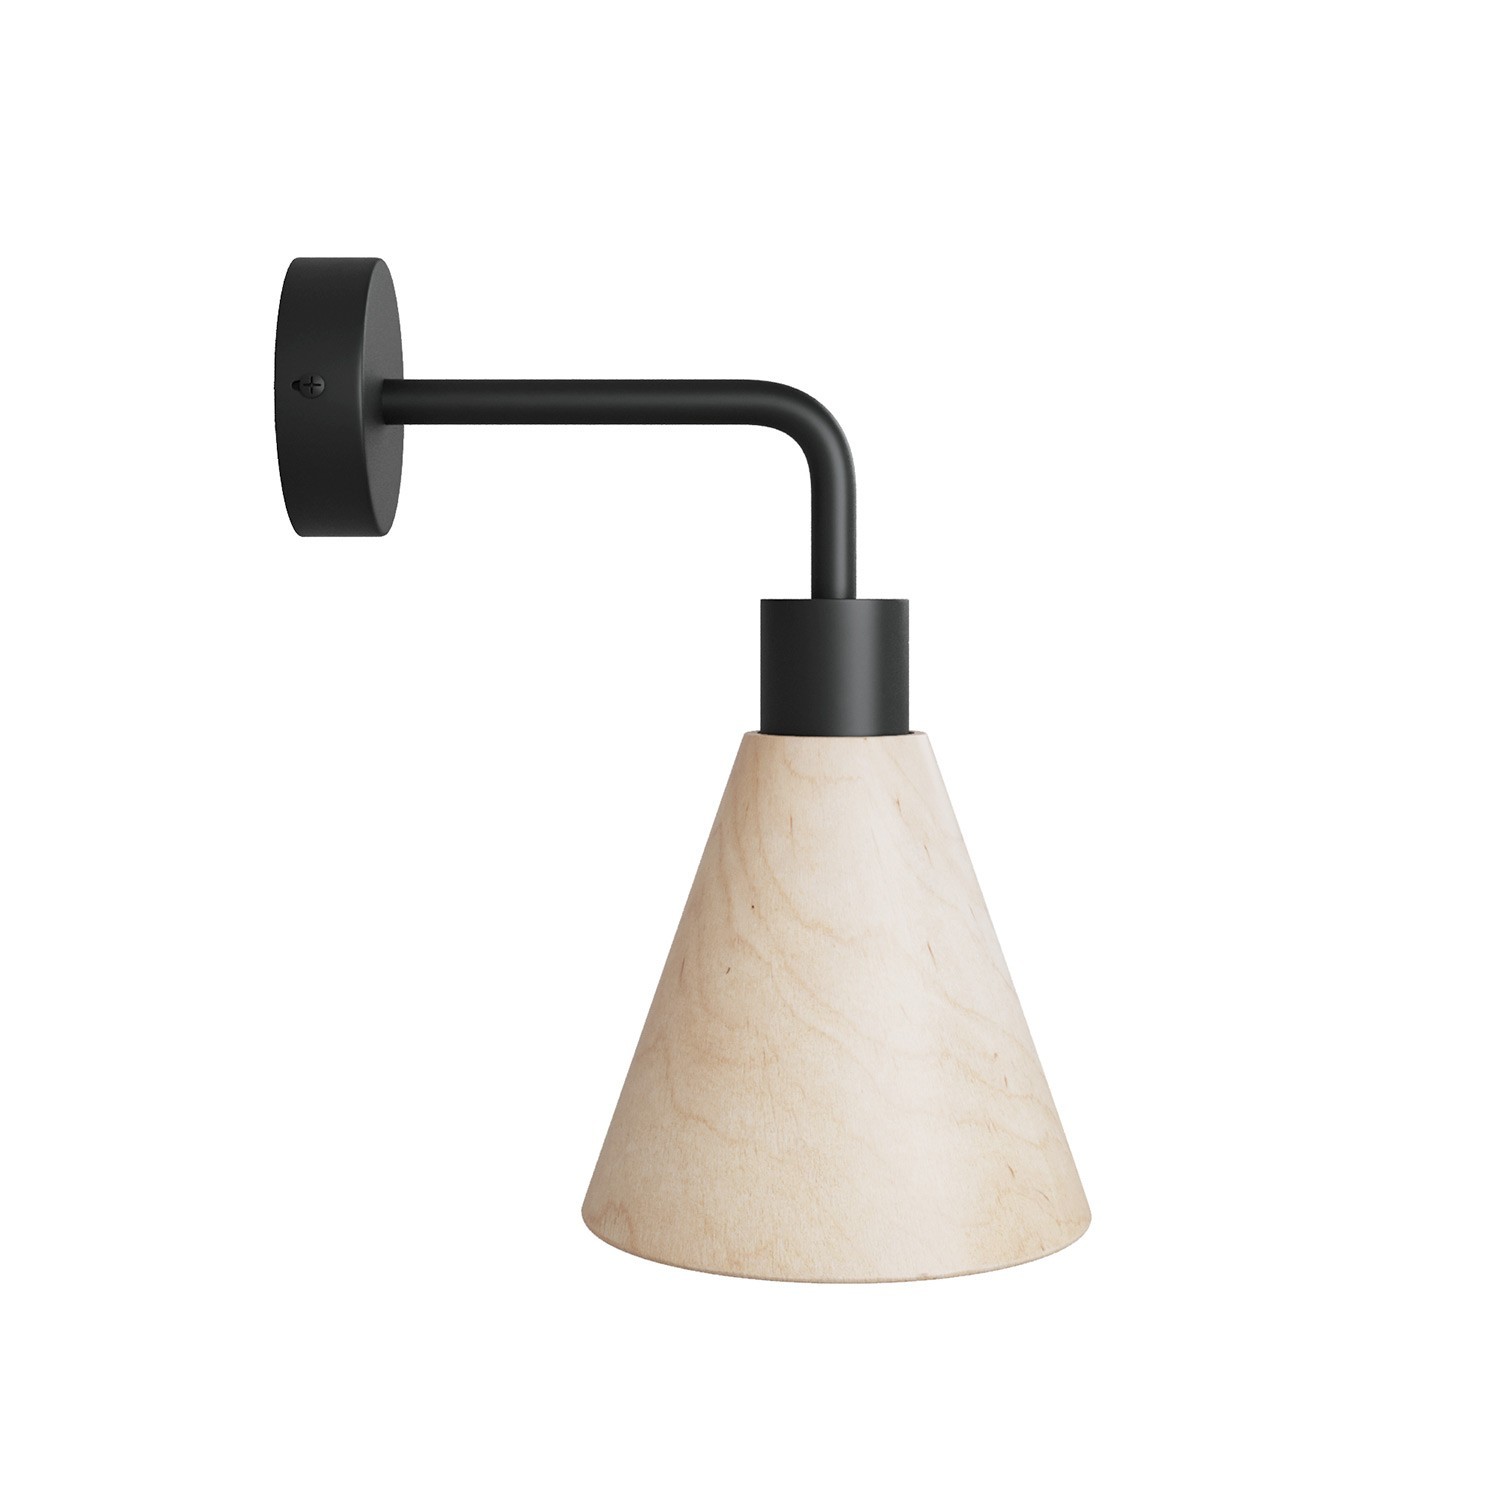 Lampa Fermaluce s dreveným tienidlom v tvare kužeľa a zahnutým nadstavcom